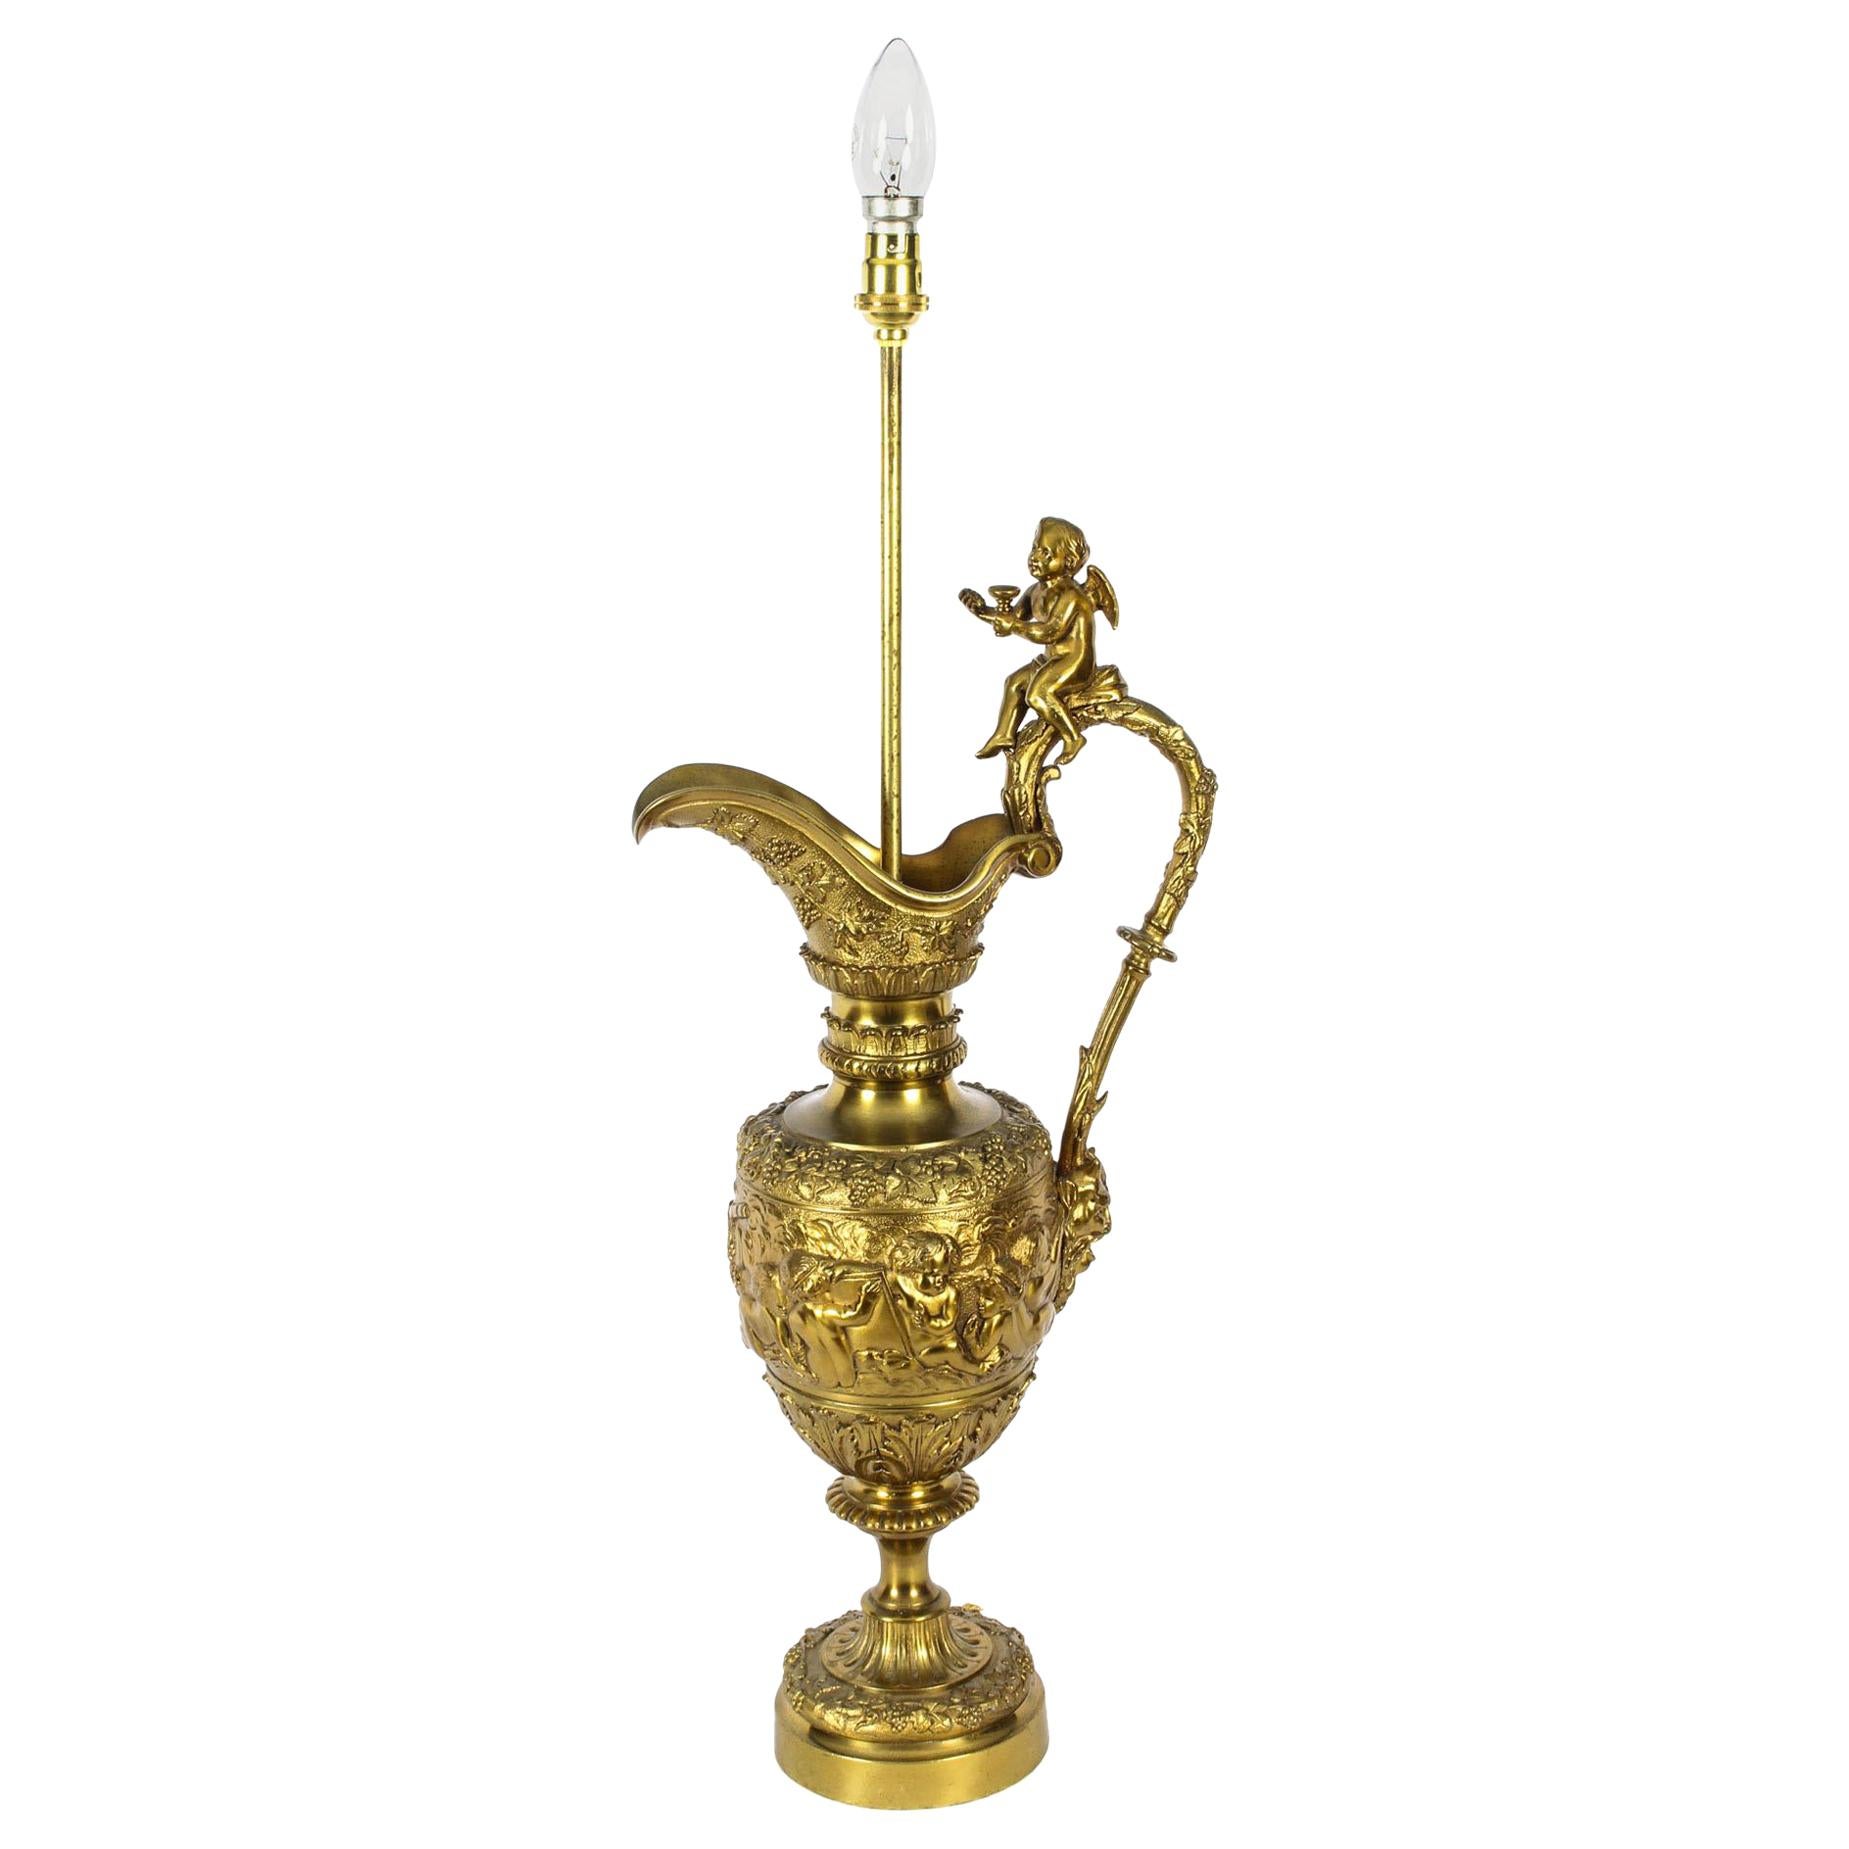 Antique Gilt Bronze Renaissance Revival Table Lamp, 19th Century For Sale